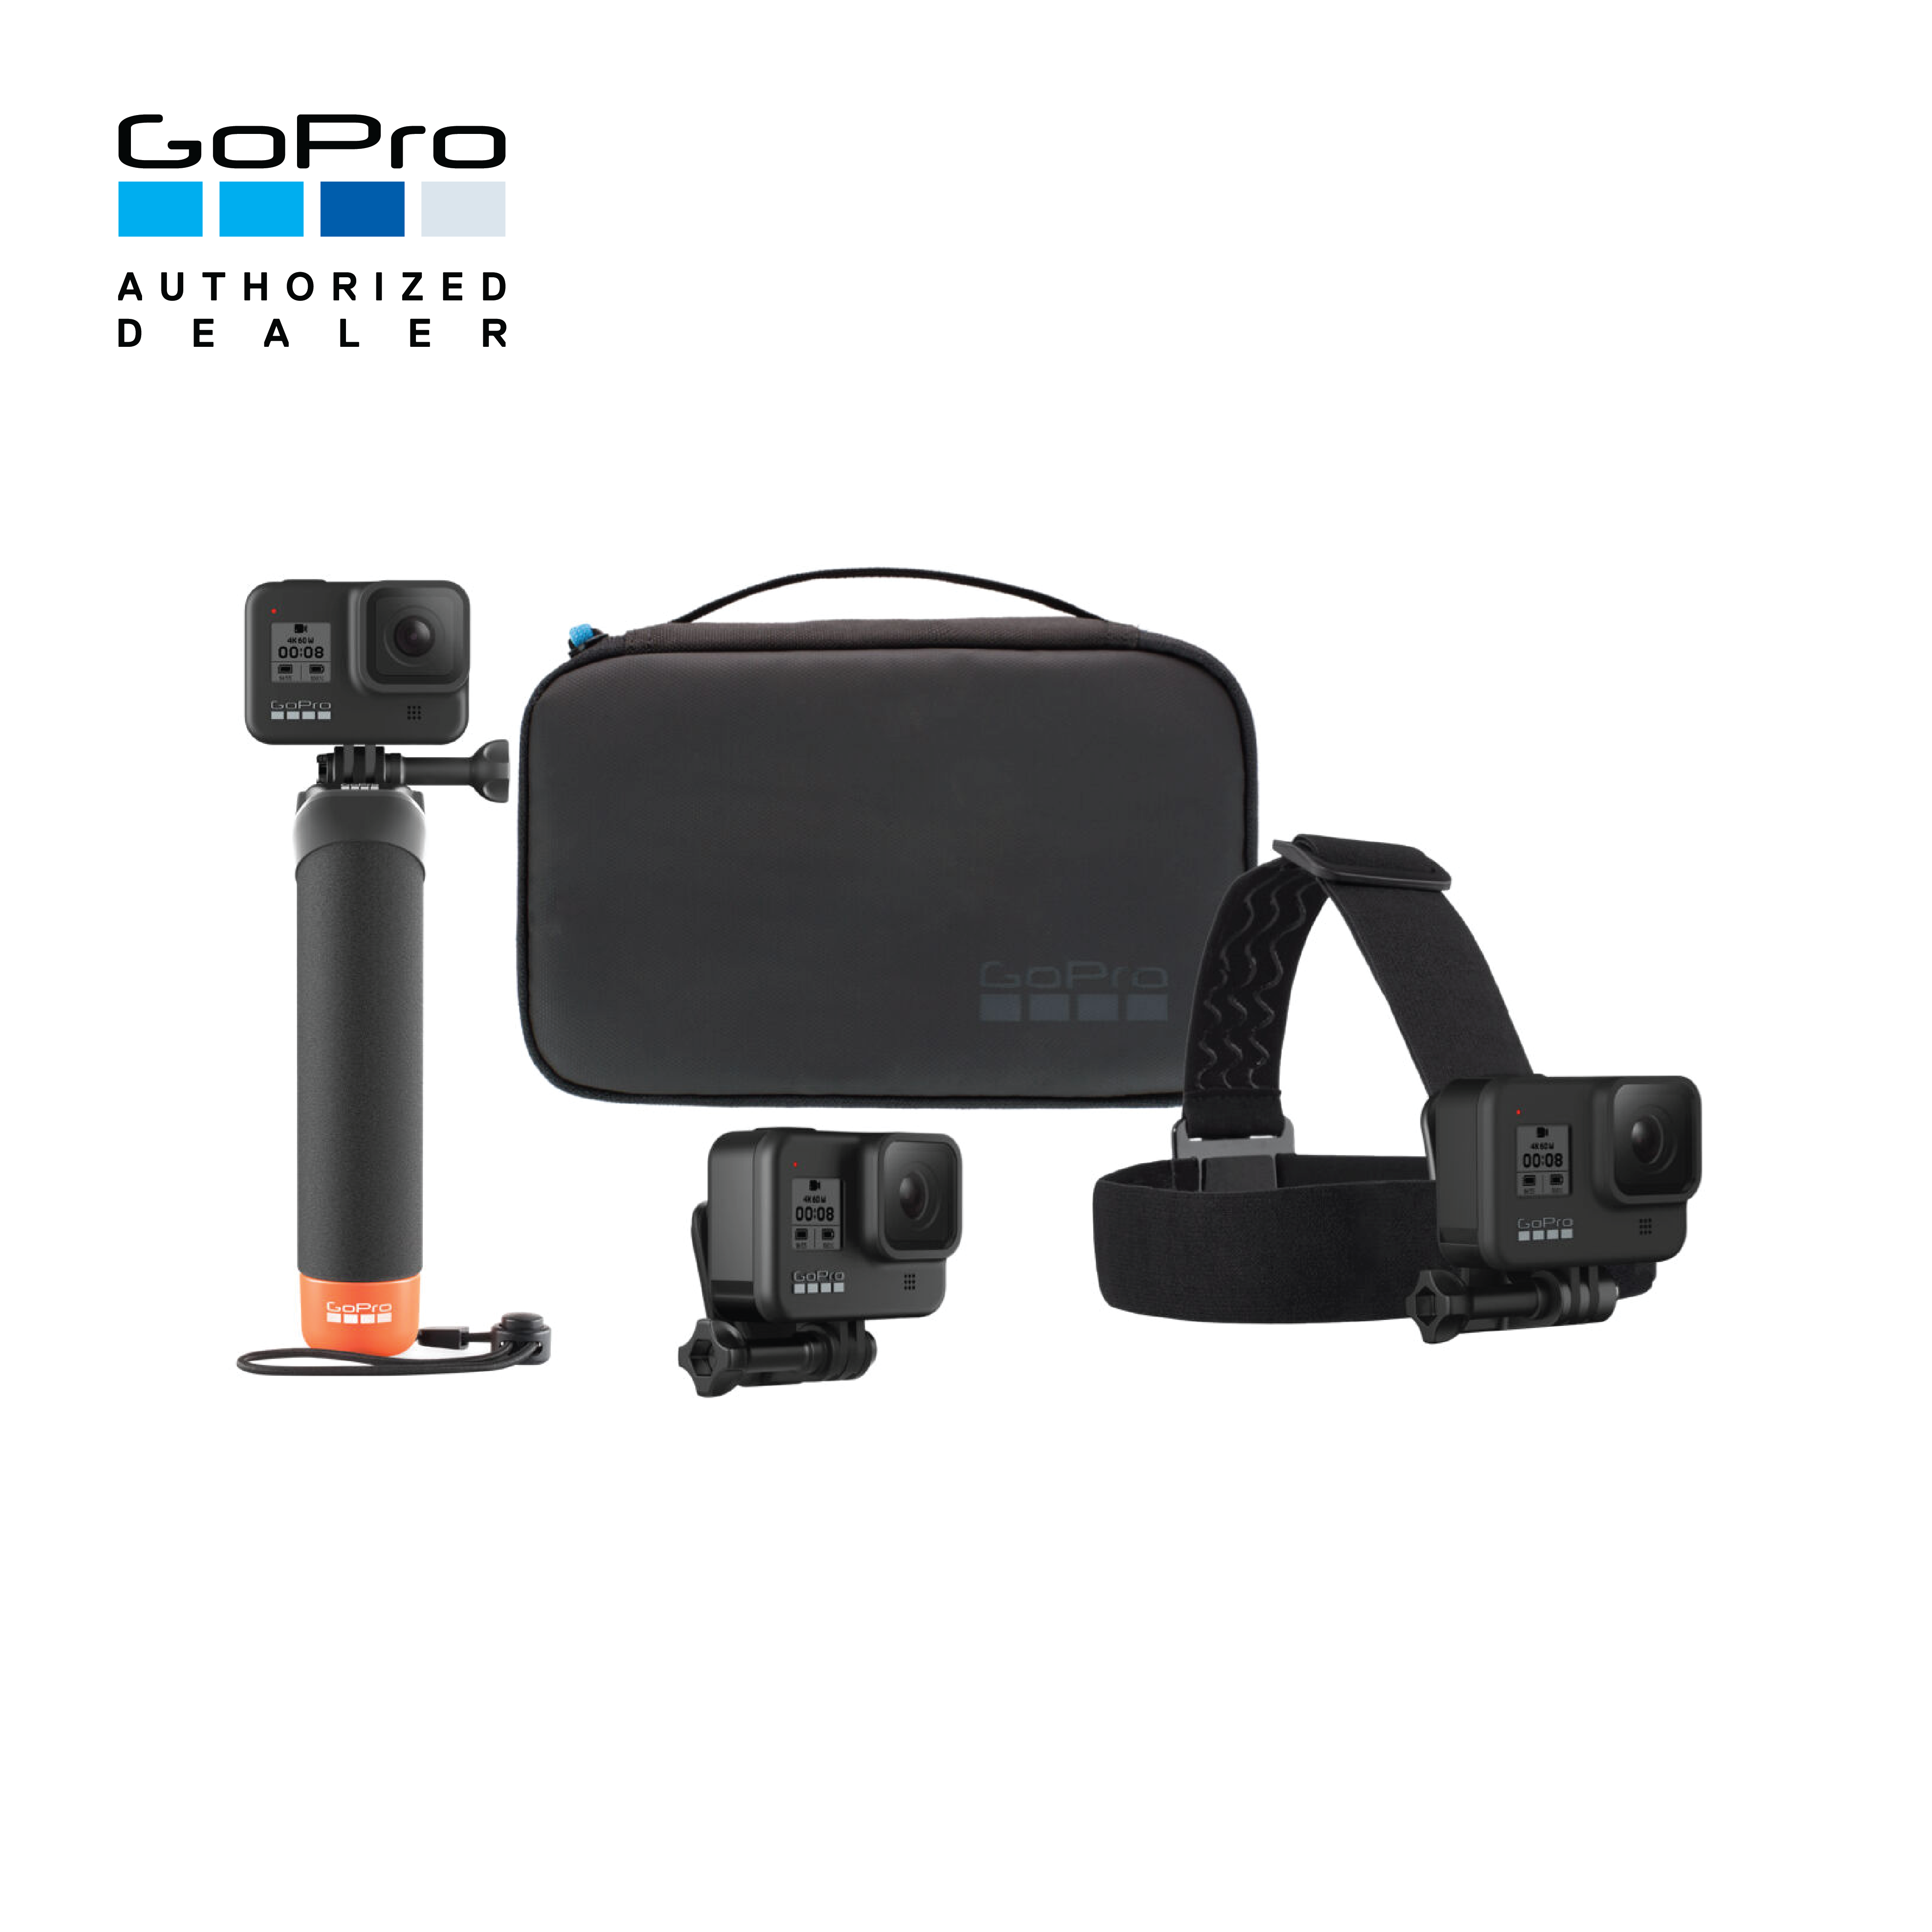 GoPro Adventure Kit ชุดอุปกรณ์เสริมพร้อมกระเป๋าใส่ที่เหมาะสำหรับการผจญภัย